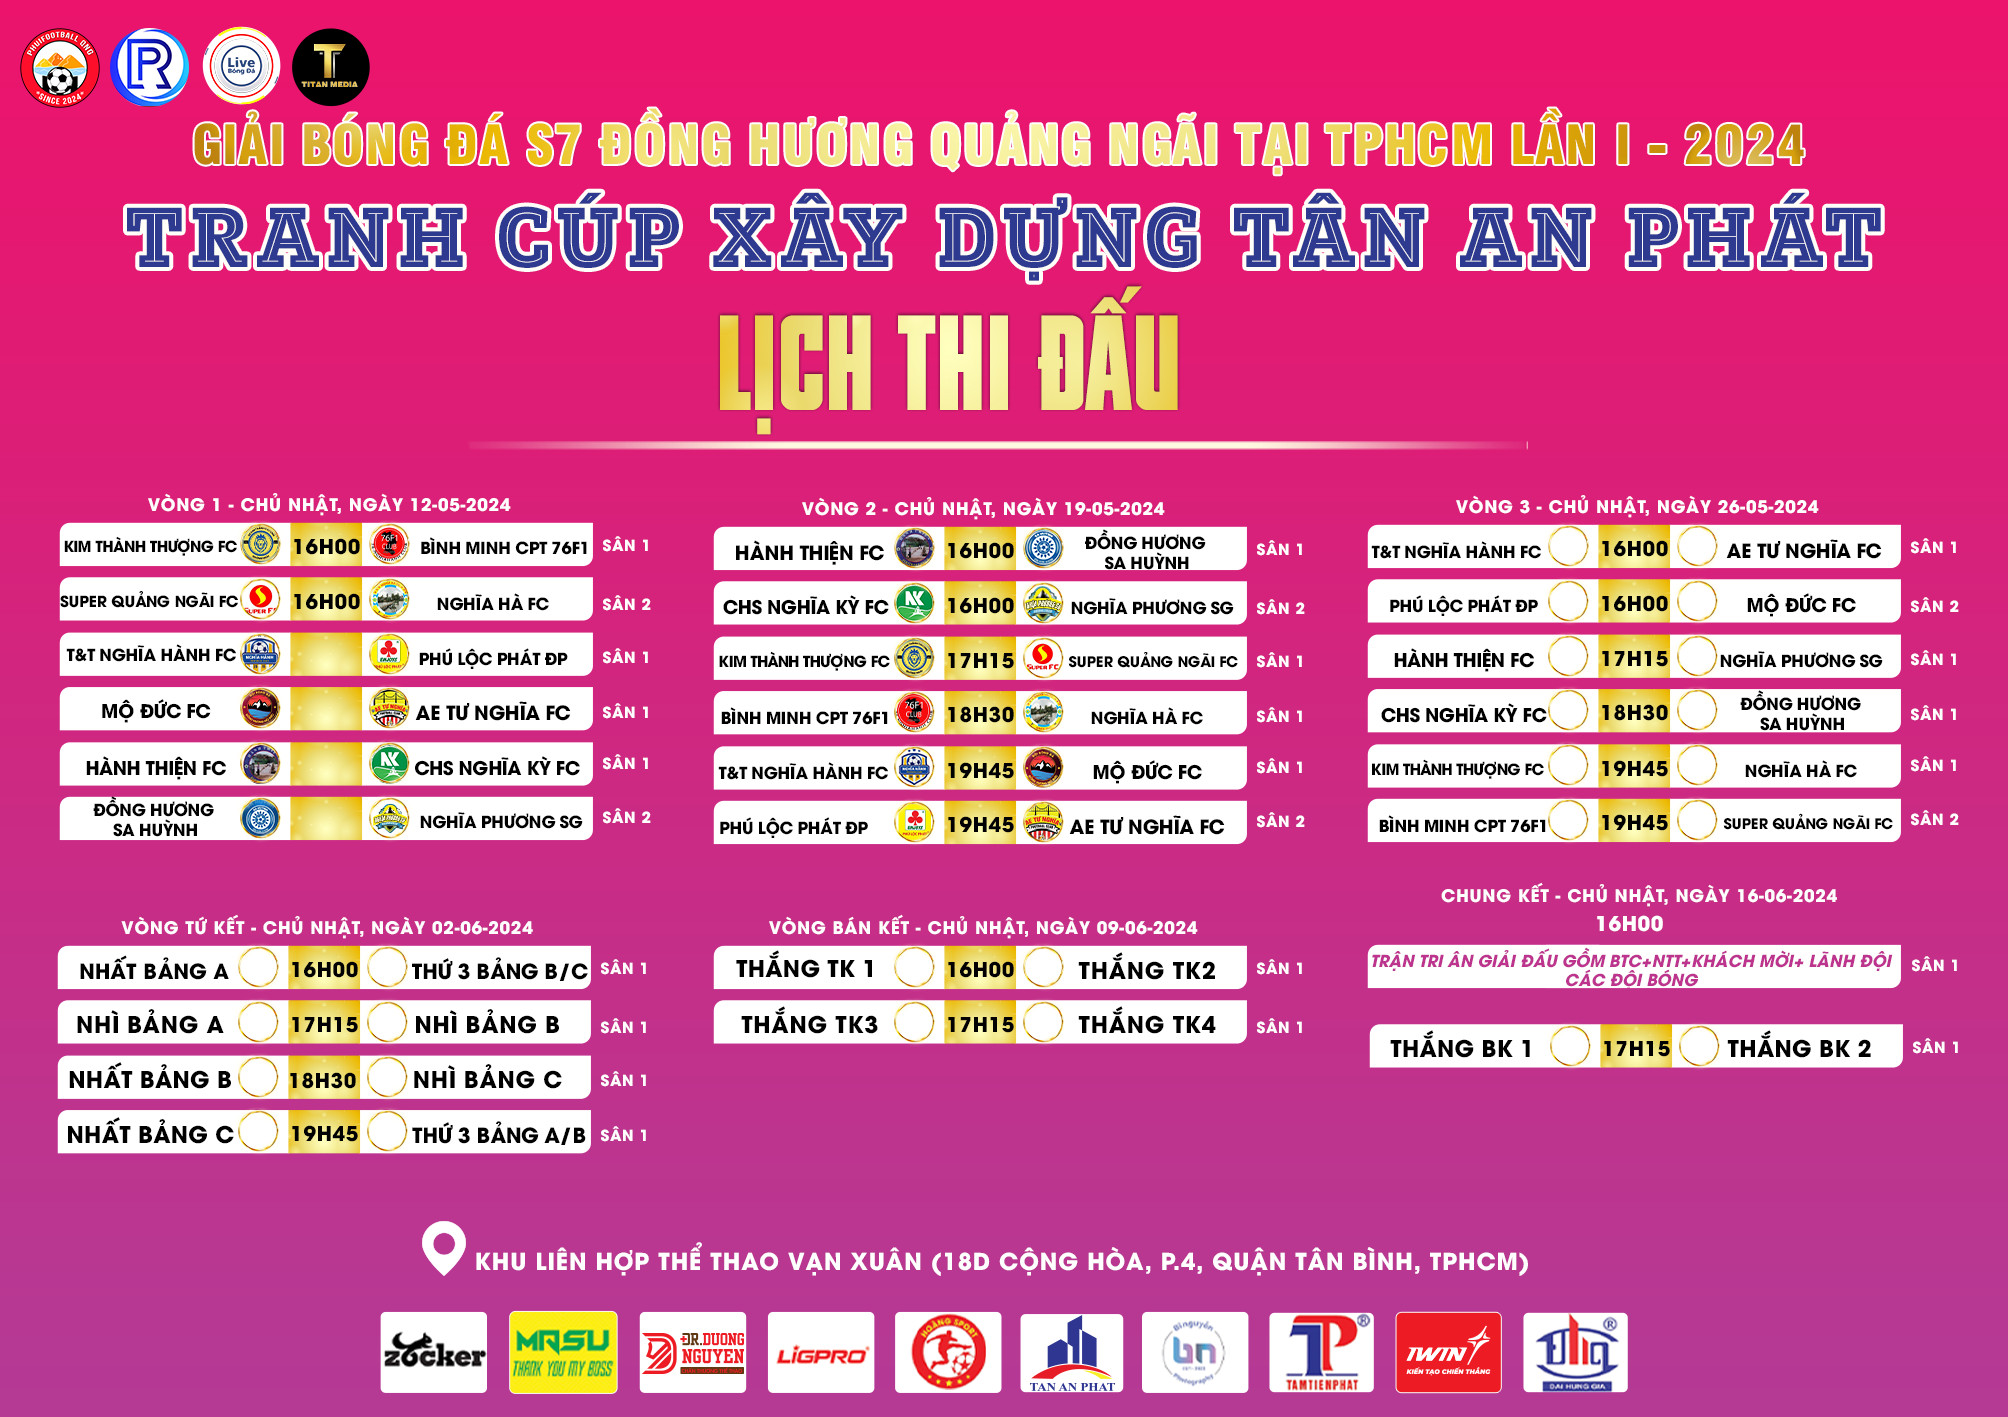 Lịch thi đấu Giải Đồng hương Quảng Ngãi tại TP.HCM lần 1 năm 2024.